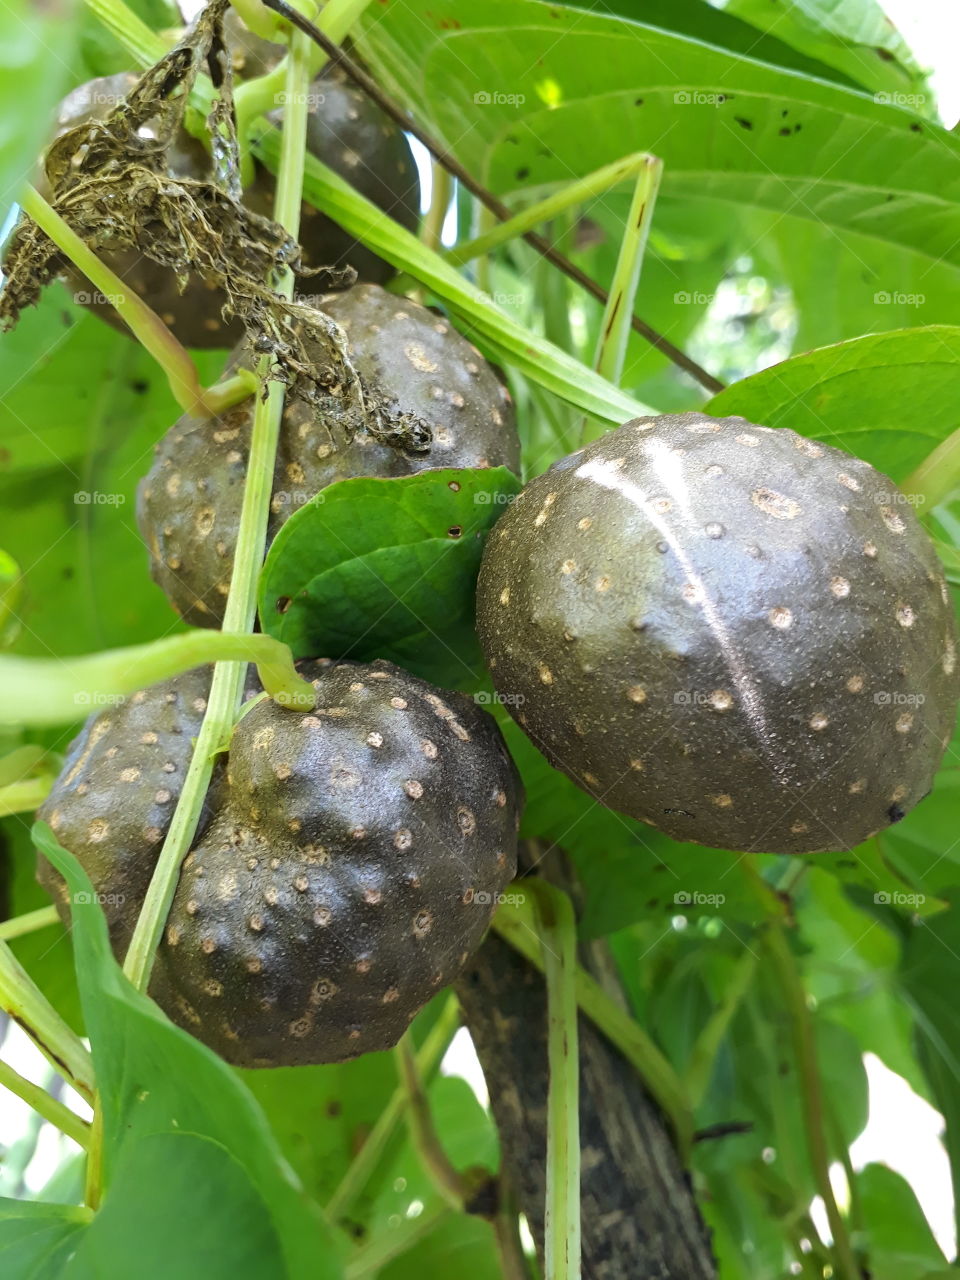 Cara-moela conhecido como cara-do-ar, contem oxatato de calcio, favorede aos calculos renais. Este esta plantado na Horta de minha mae em Caiaponia, Goias/ Brasil.